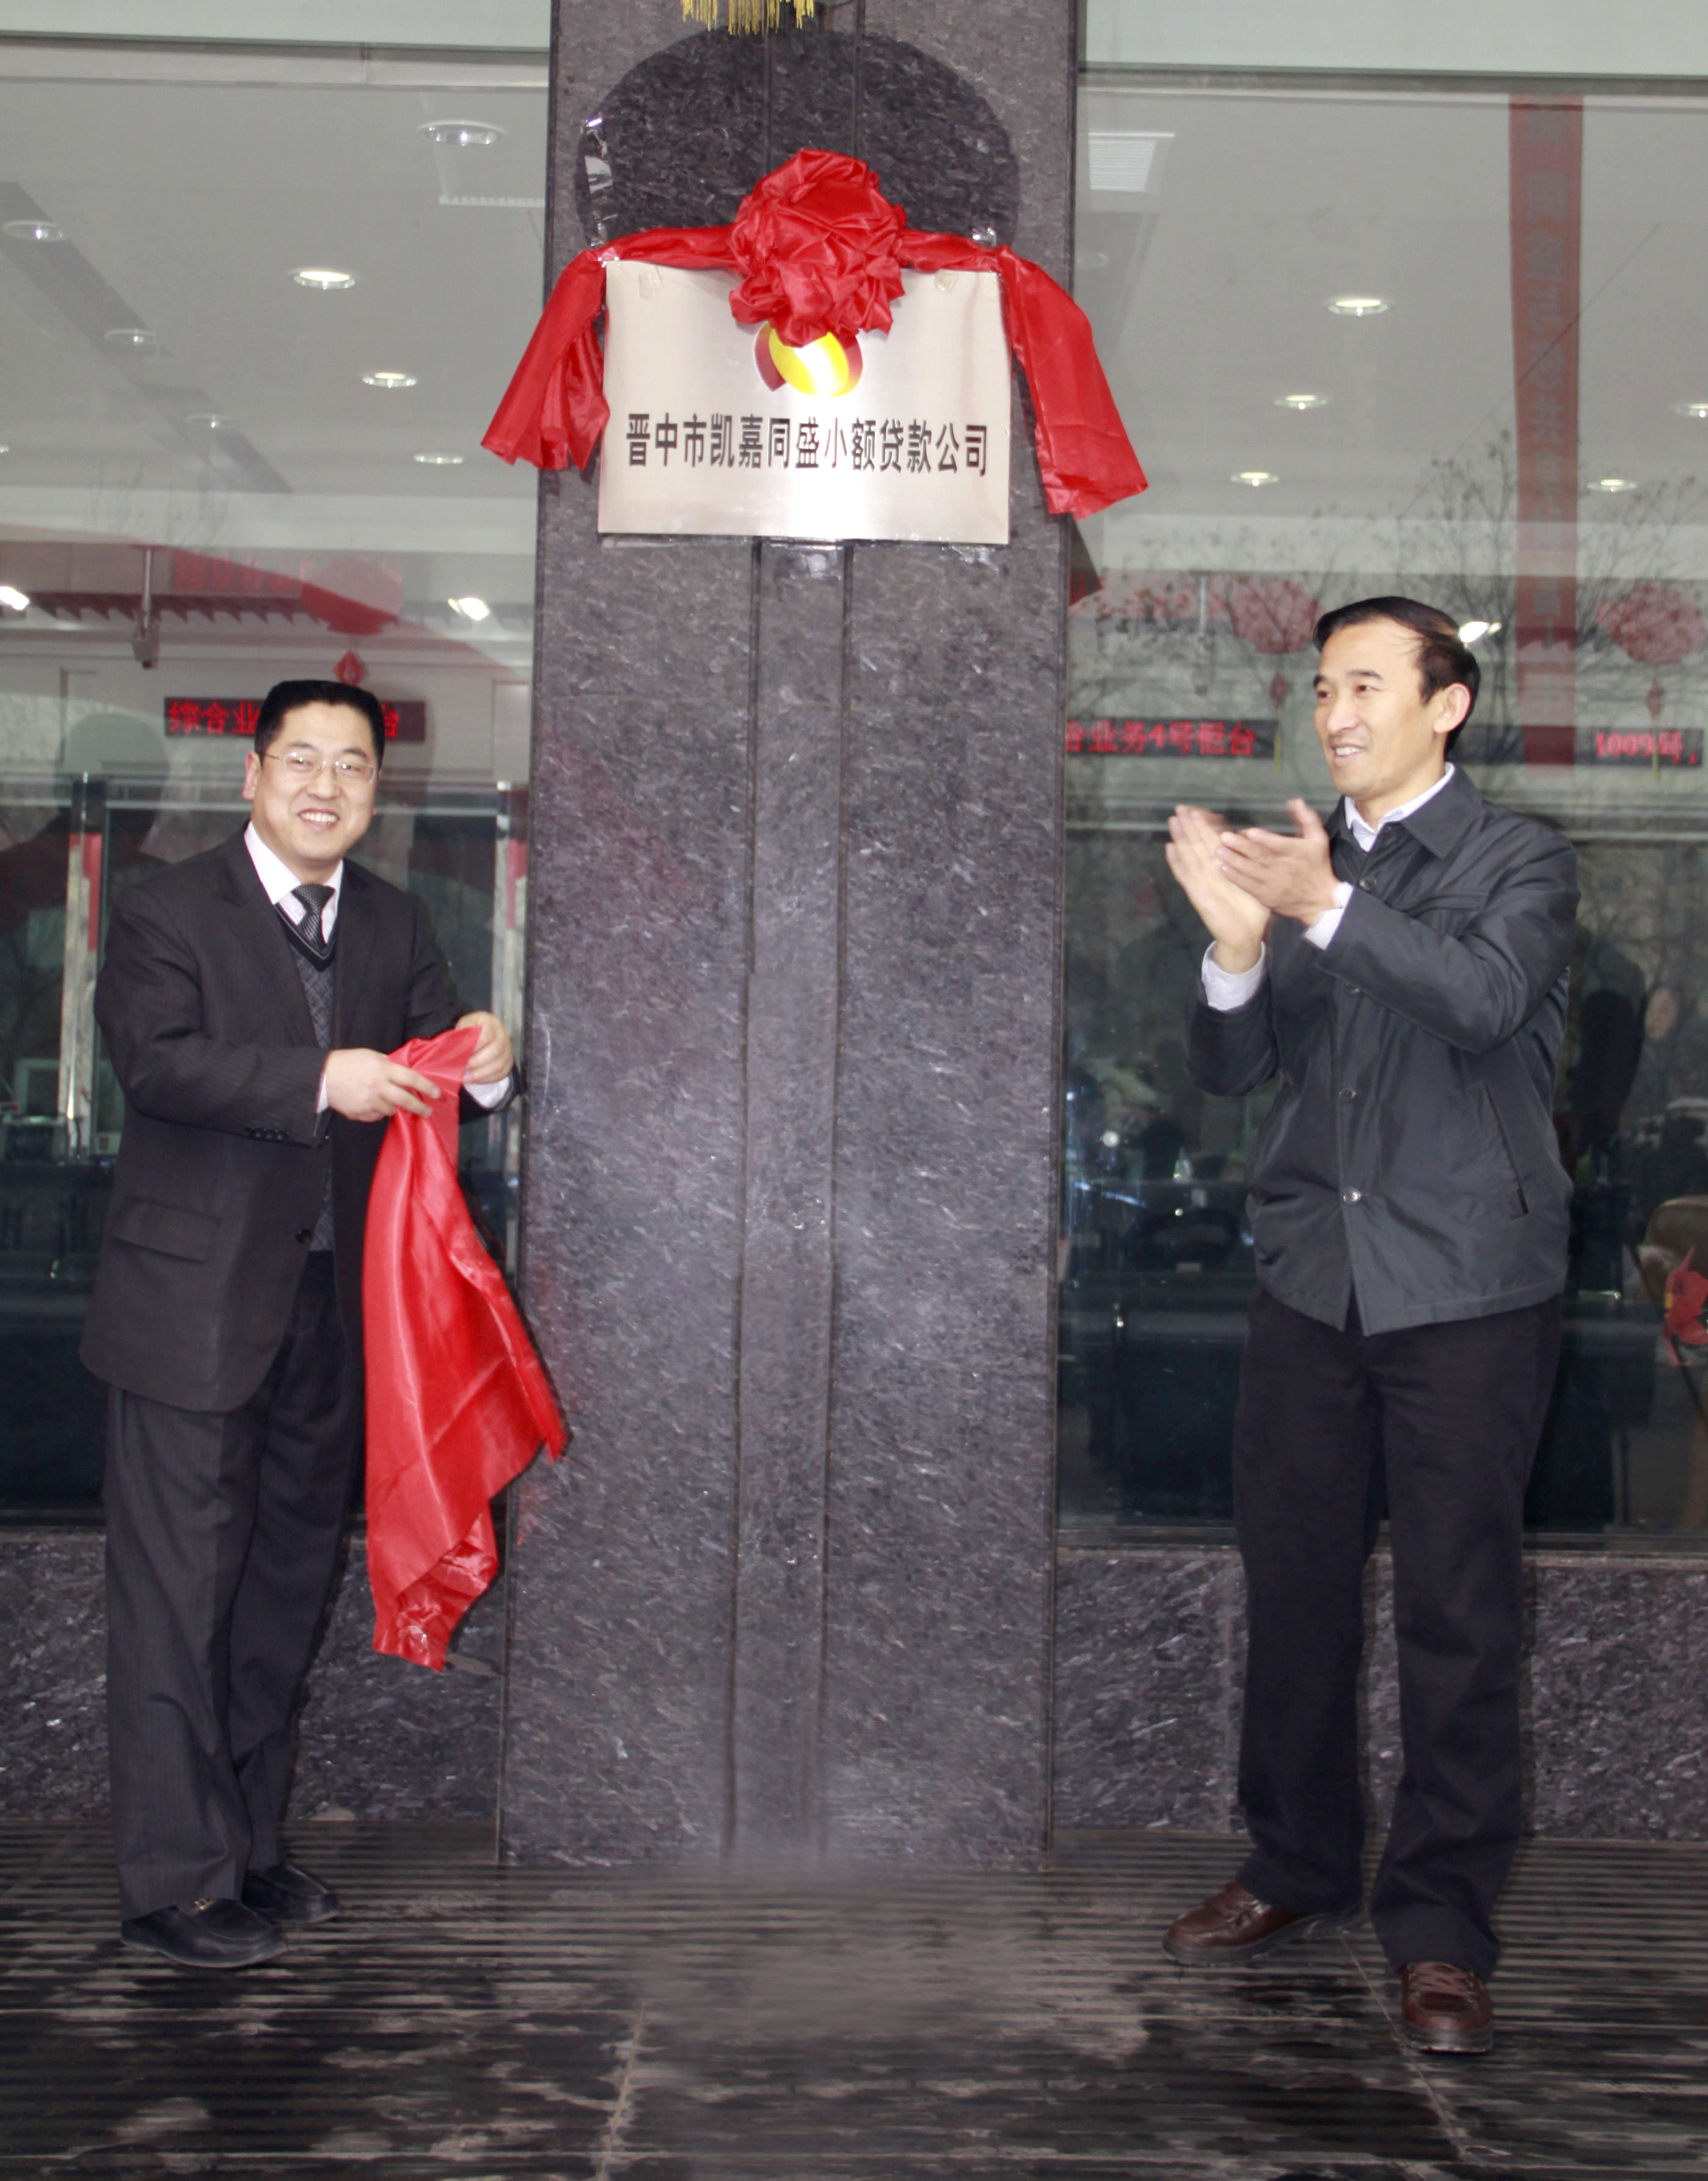 （25）2011年12月6日，晋中市凯嘉同盛小额贷款有限公司成立